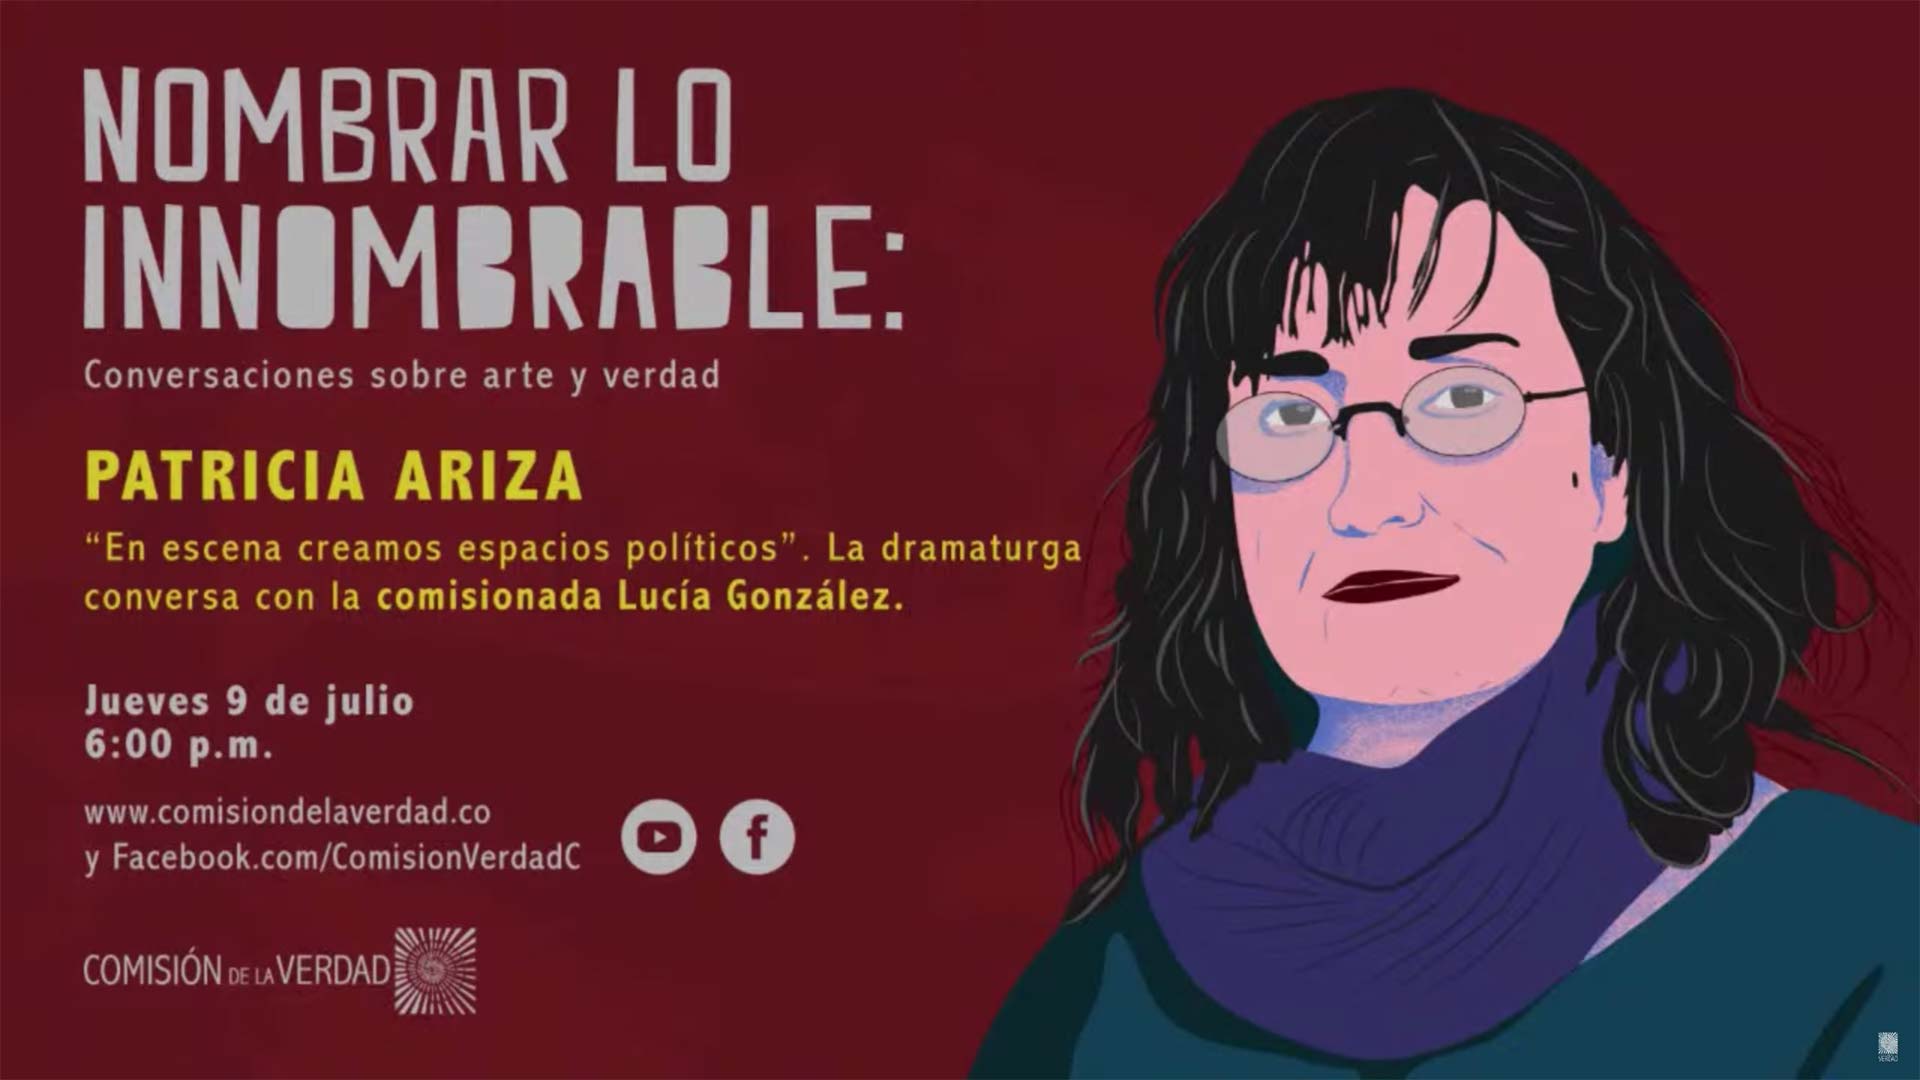 La dramaturga conversa con la comisionada Lucía González.